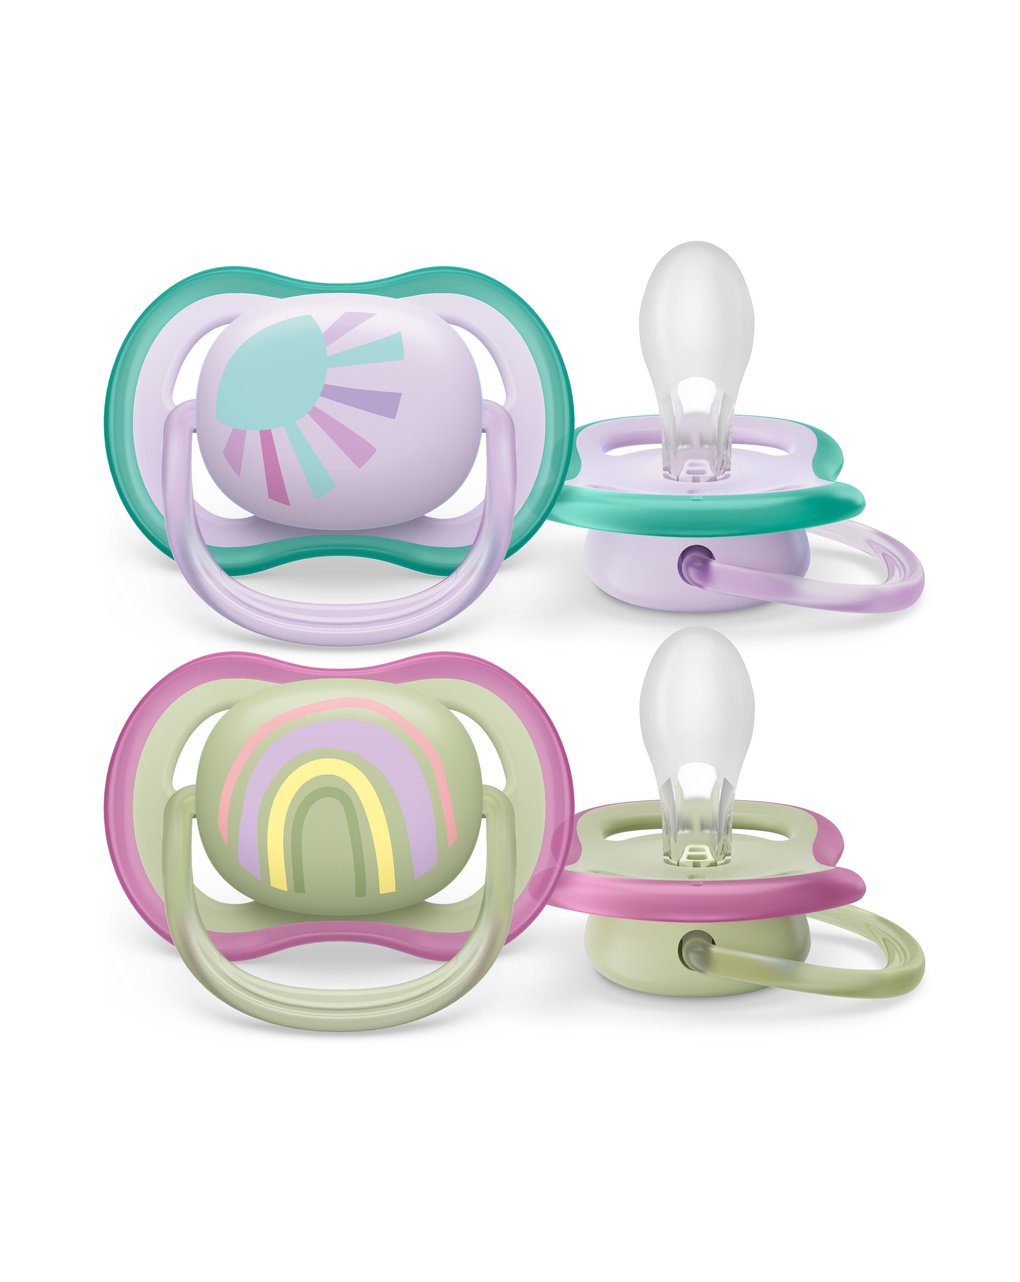 Chupetes philips avent ultra air: comodidad y seguridad para bebés.